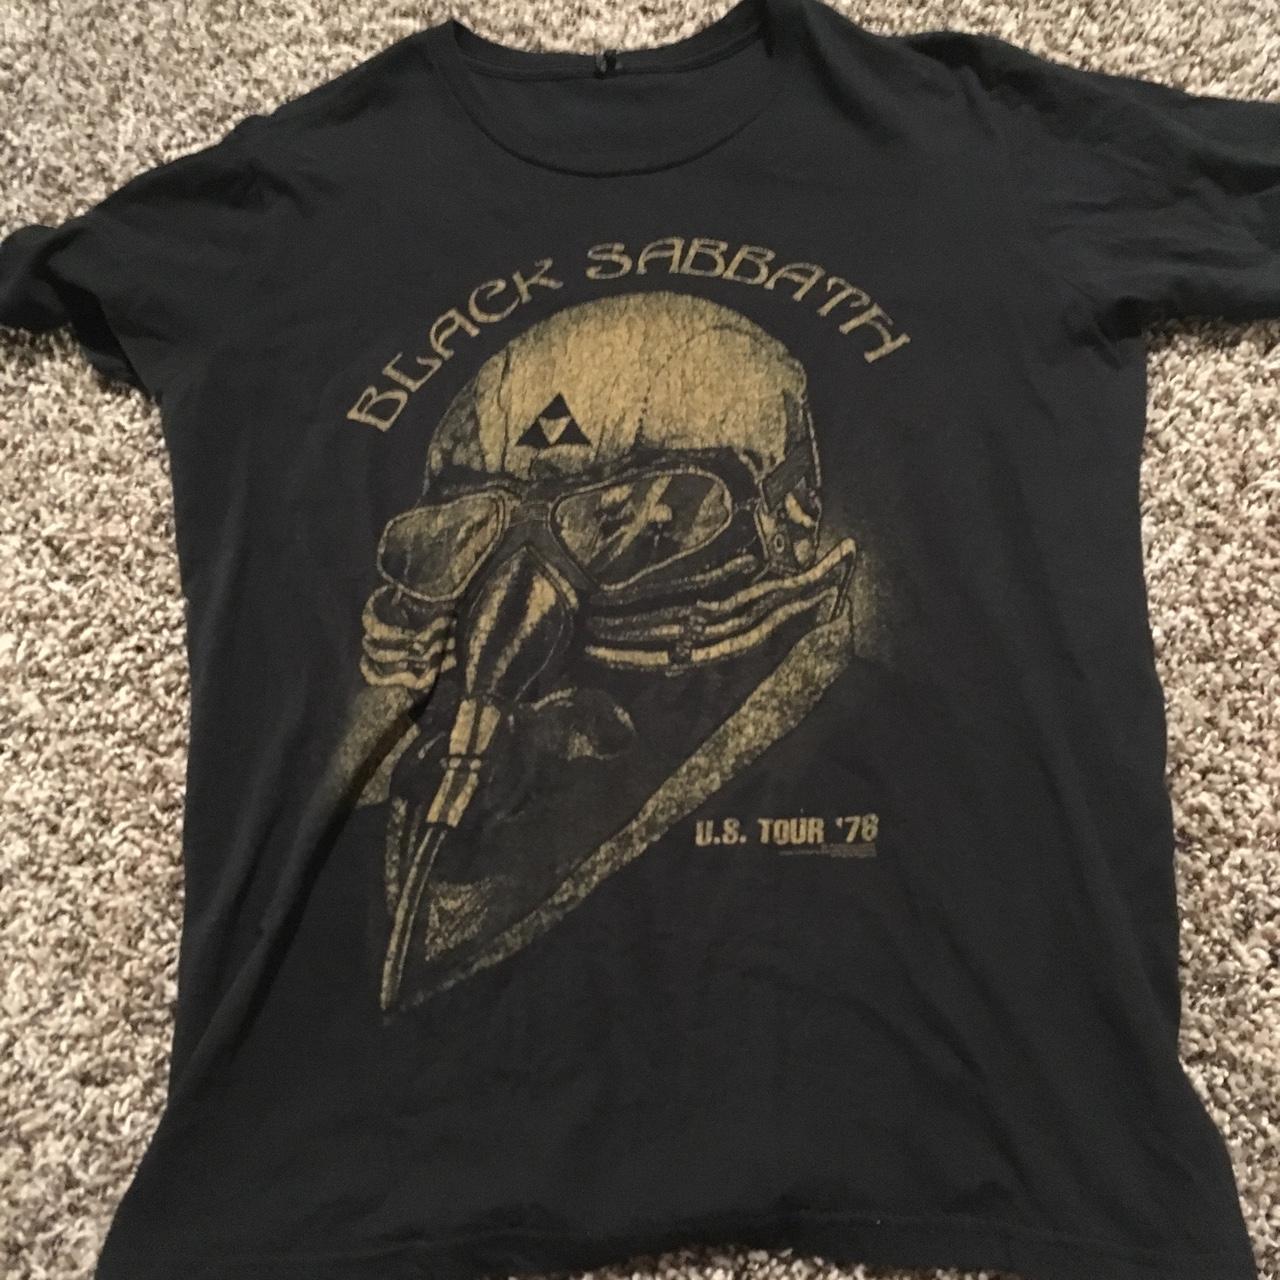 Black Sabbath 1978 U.S. Tour Medium Tee Shirt,... - Depop